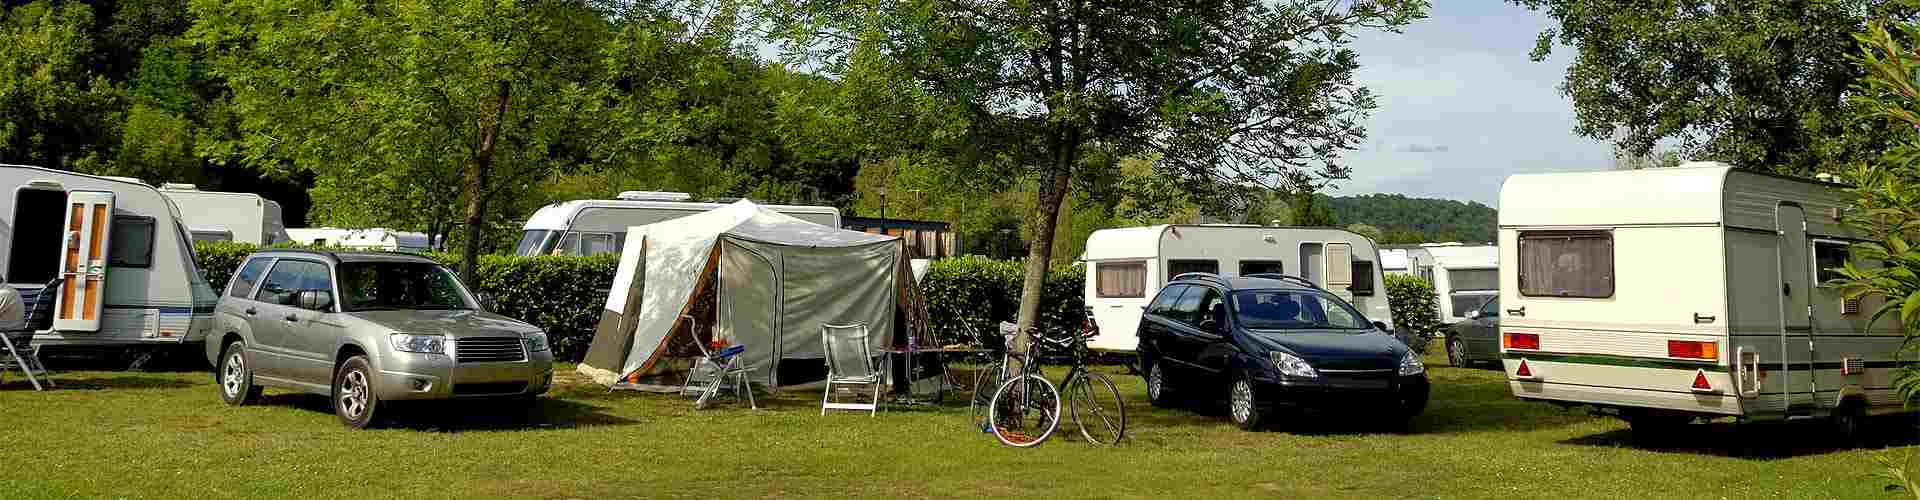 Campings y bungalows en Aldai